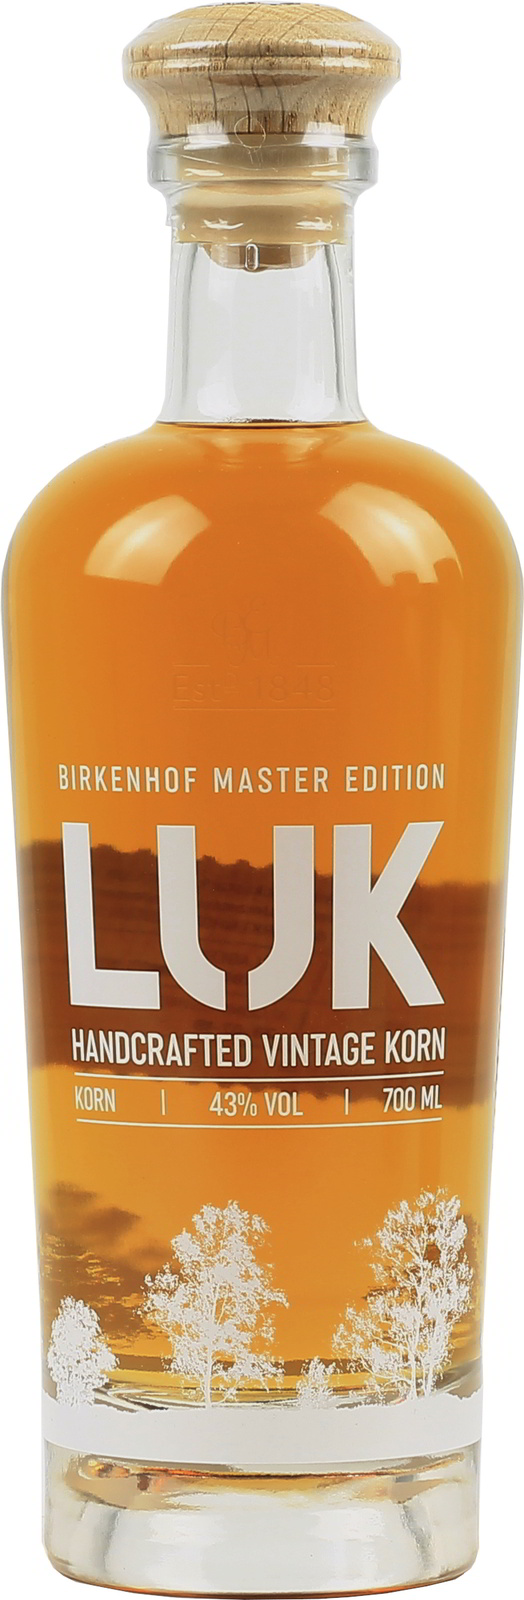 Handcrafted exquisit LUK Korn, Birkenhof Vintage